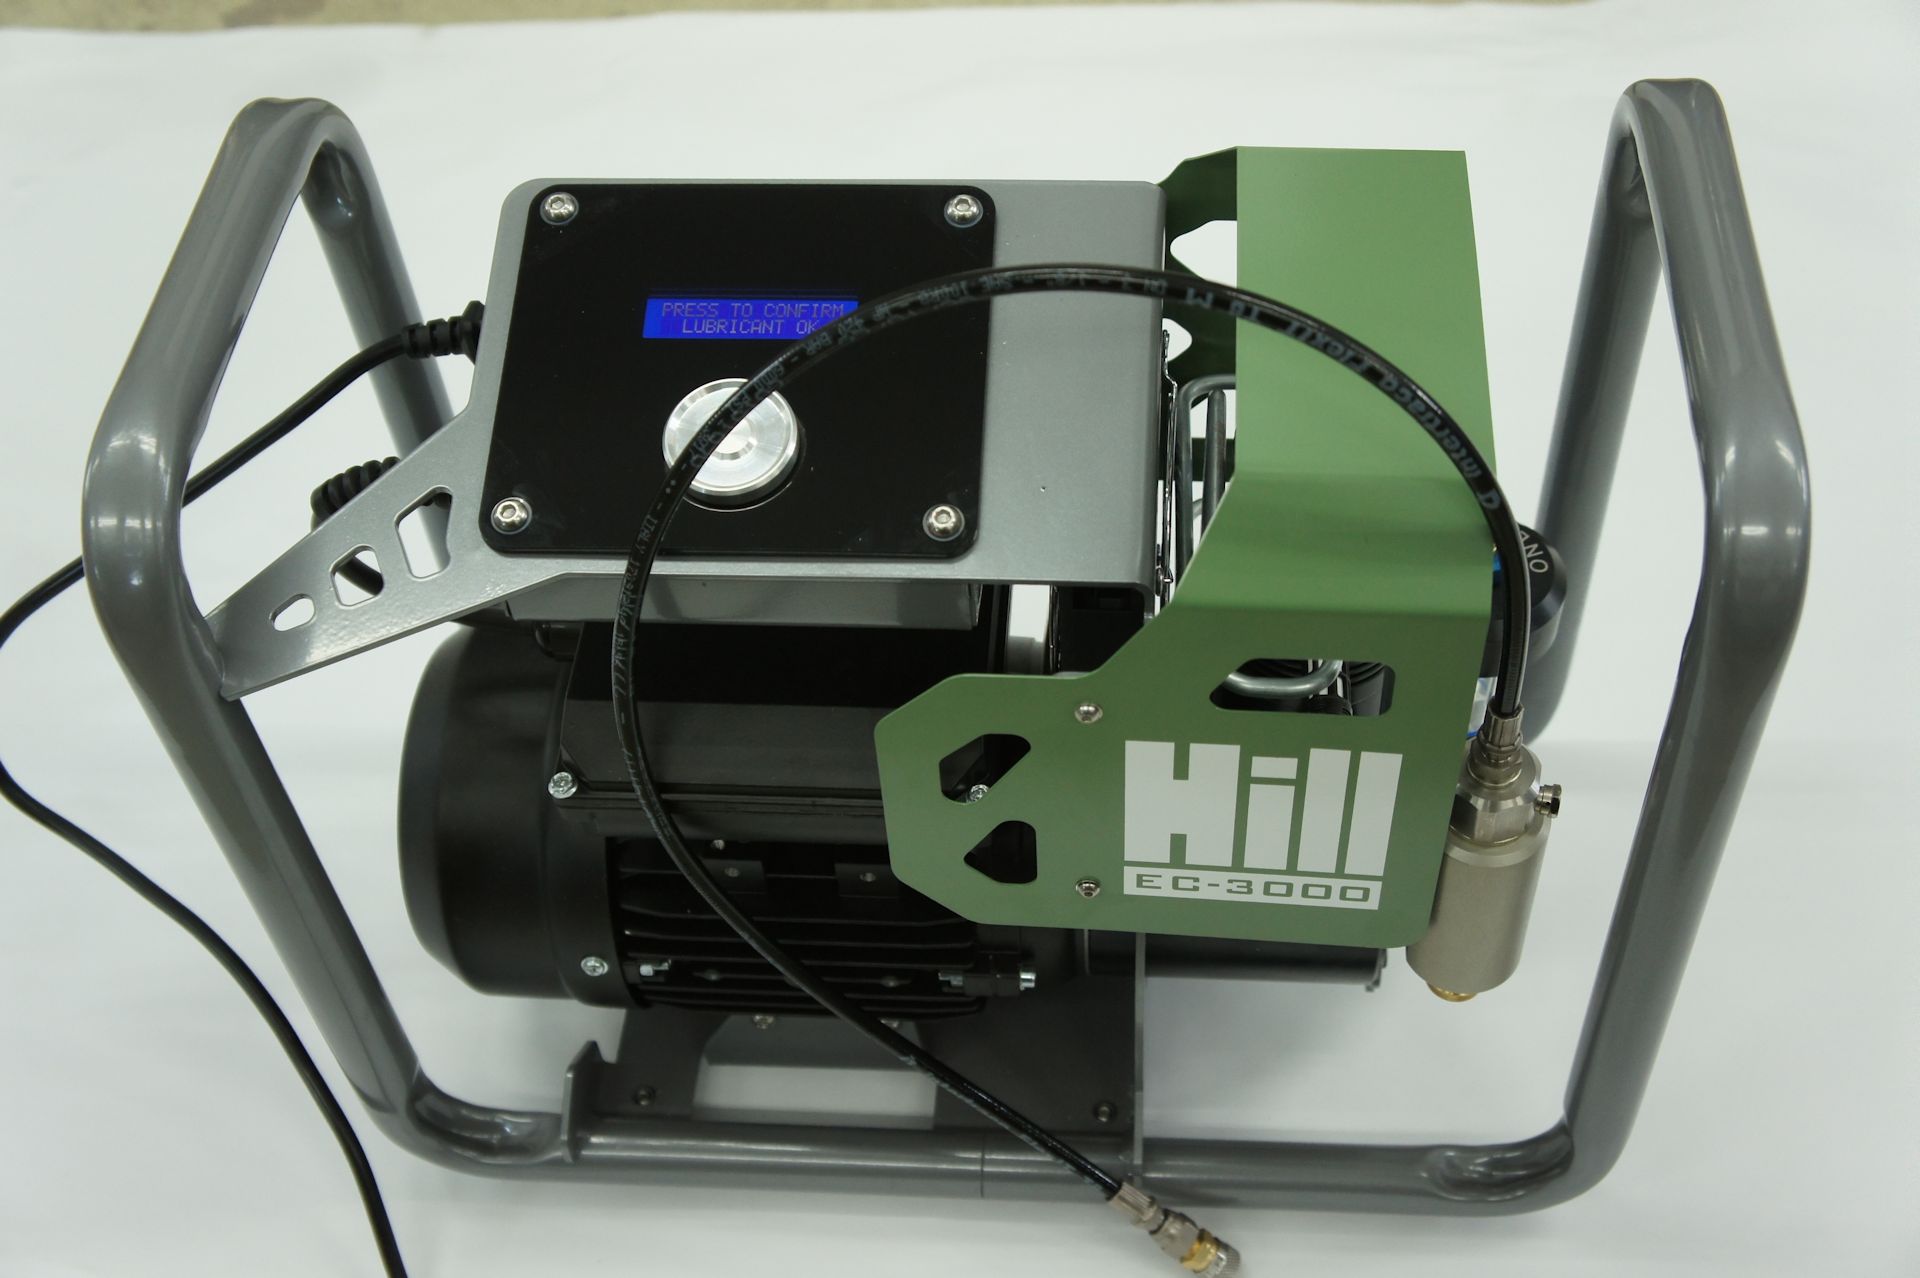 HILL EC-3000 ELEKTRISCHER DRUCKLUFTKOMPRESSOR  für Kartuschen mit Zubehör aus dem Lieferumfang